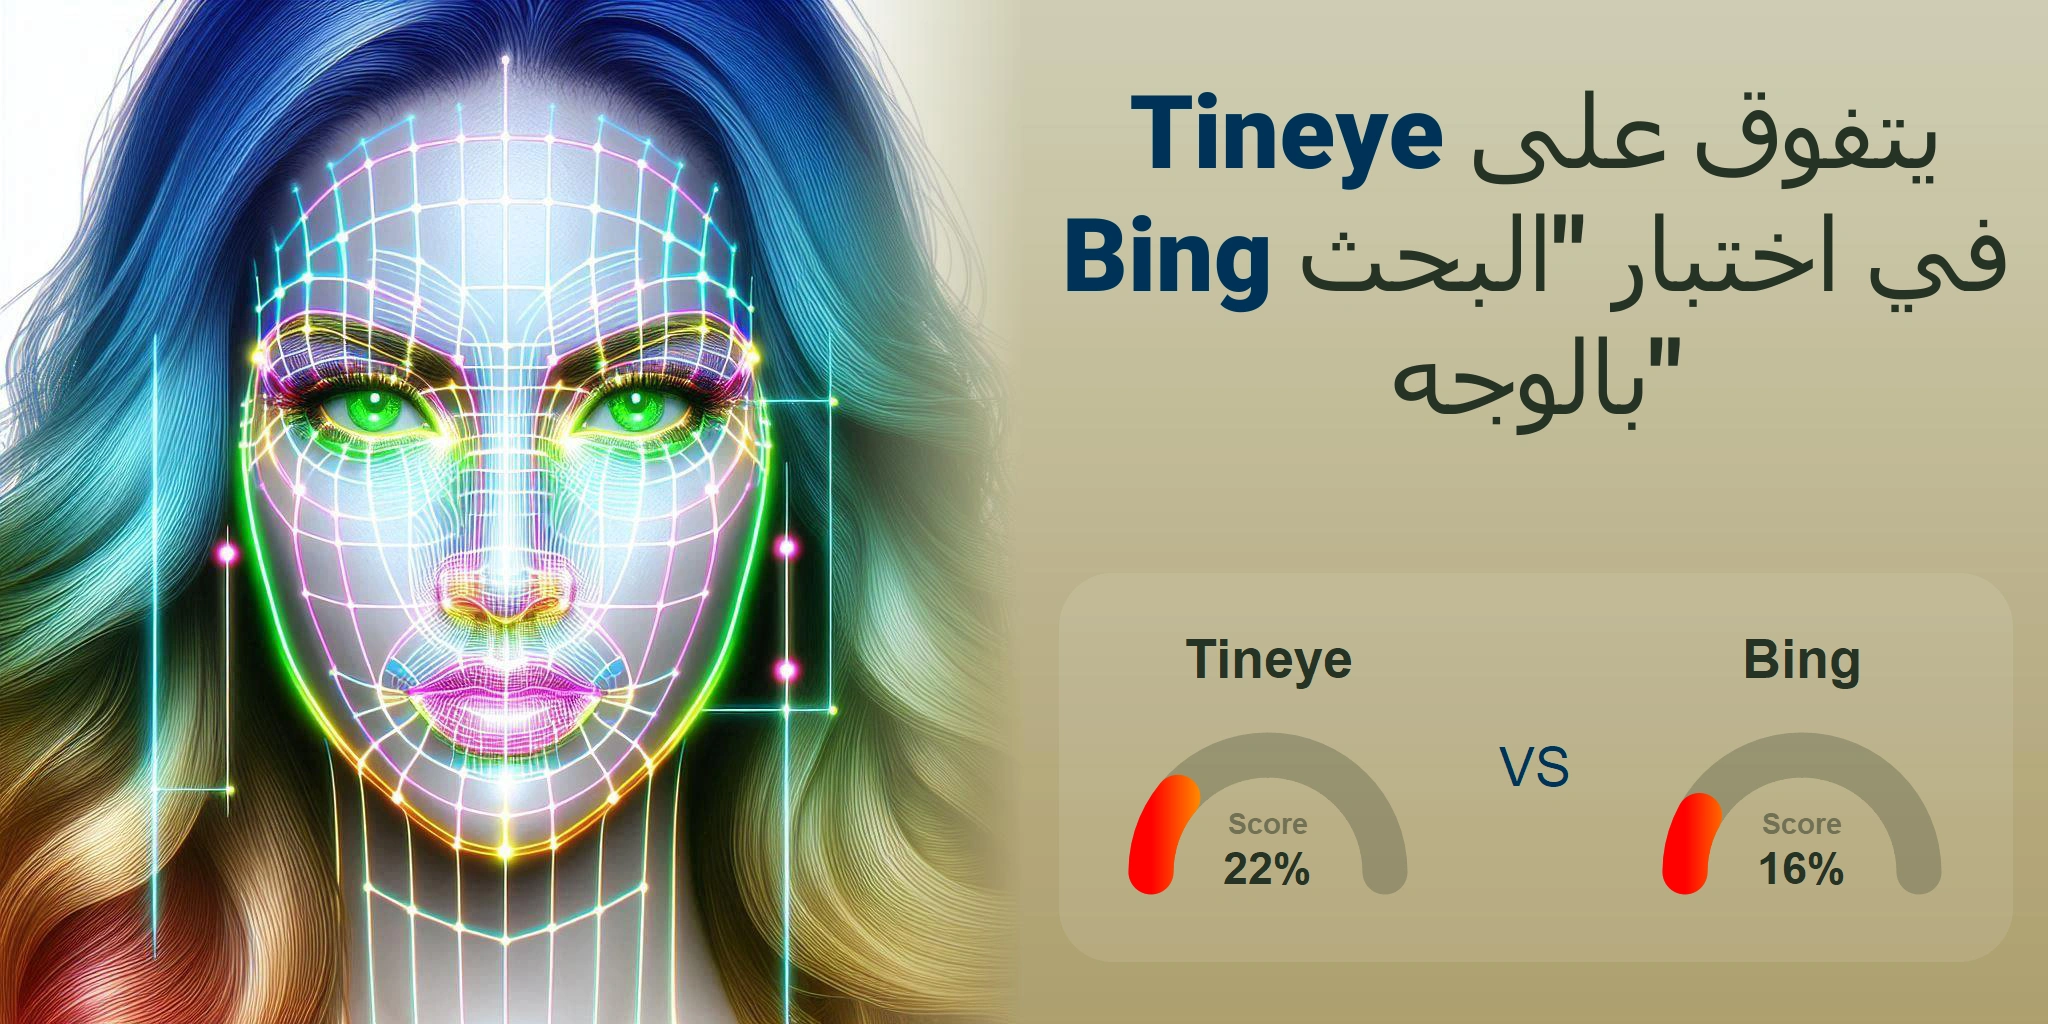 ما هو الأفضل للبحث بالوجه: <br>Tineye أو Bing؟